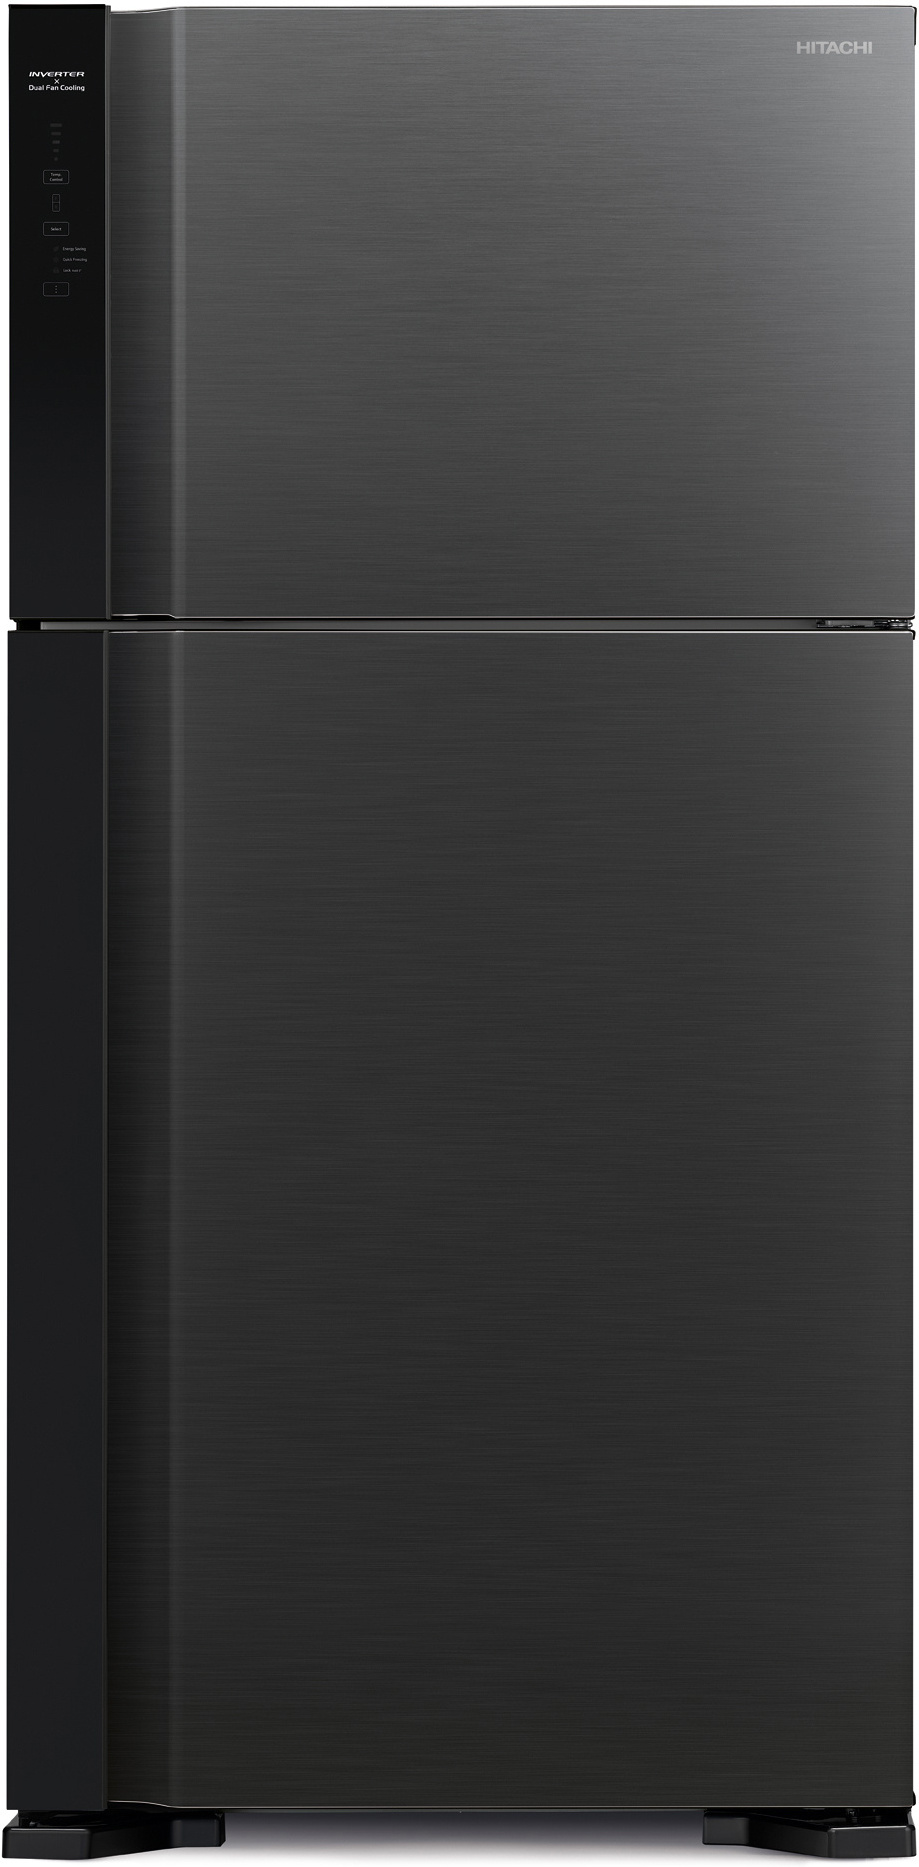 

Холодильник Hitachi R-V610PUC7 BBK черный бриллиант